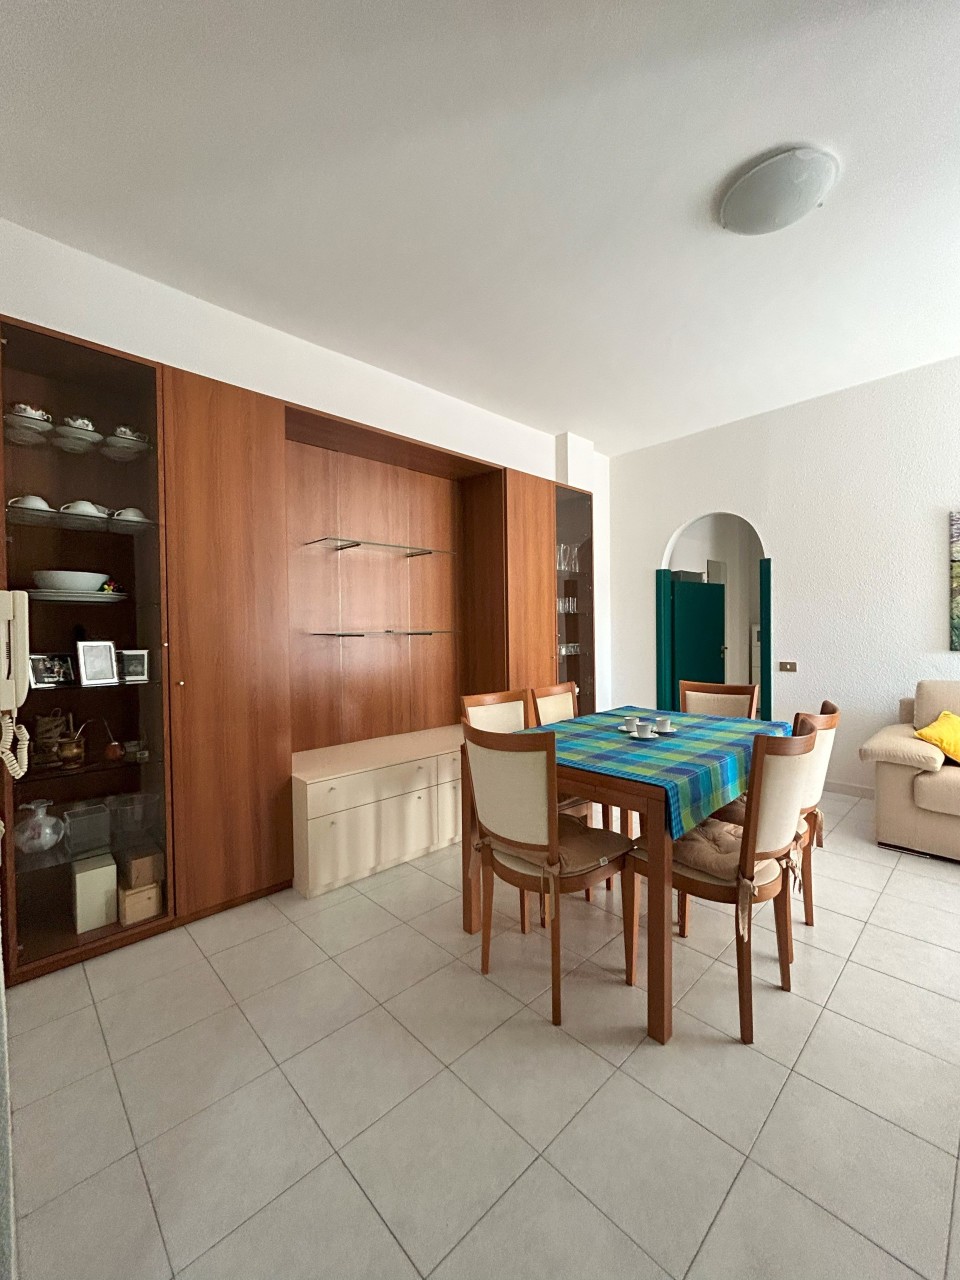 Appartamento in vendita a Francavilla al Mare, 3 locali, prezzo € 140.000 | PortaleAgenzieImmobiliari.it